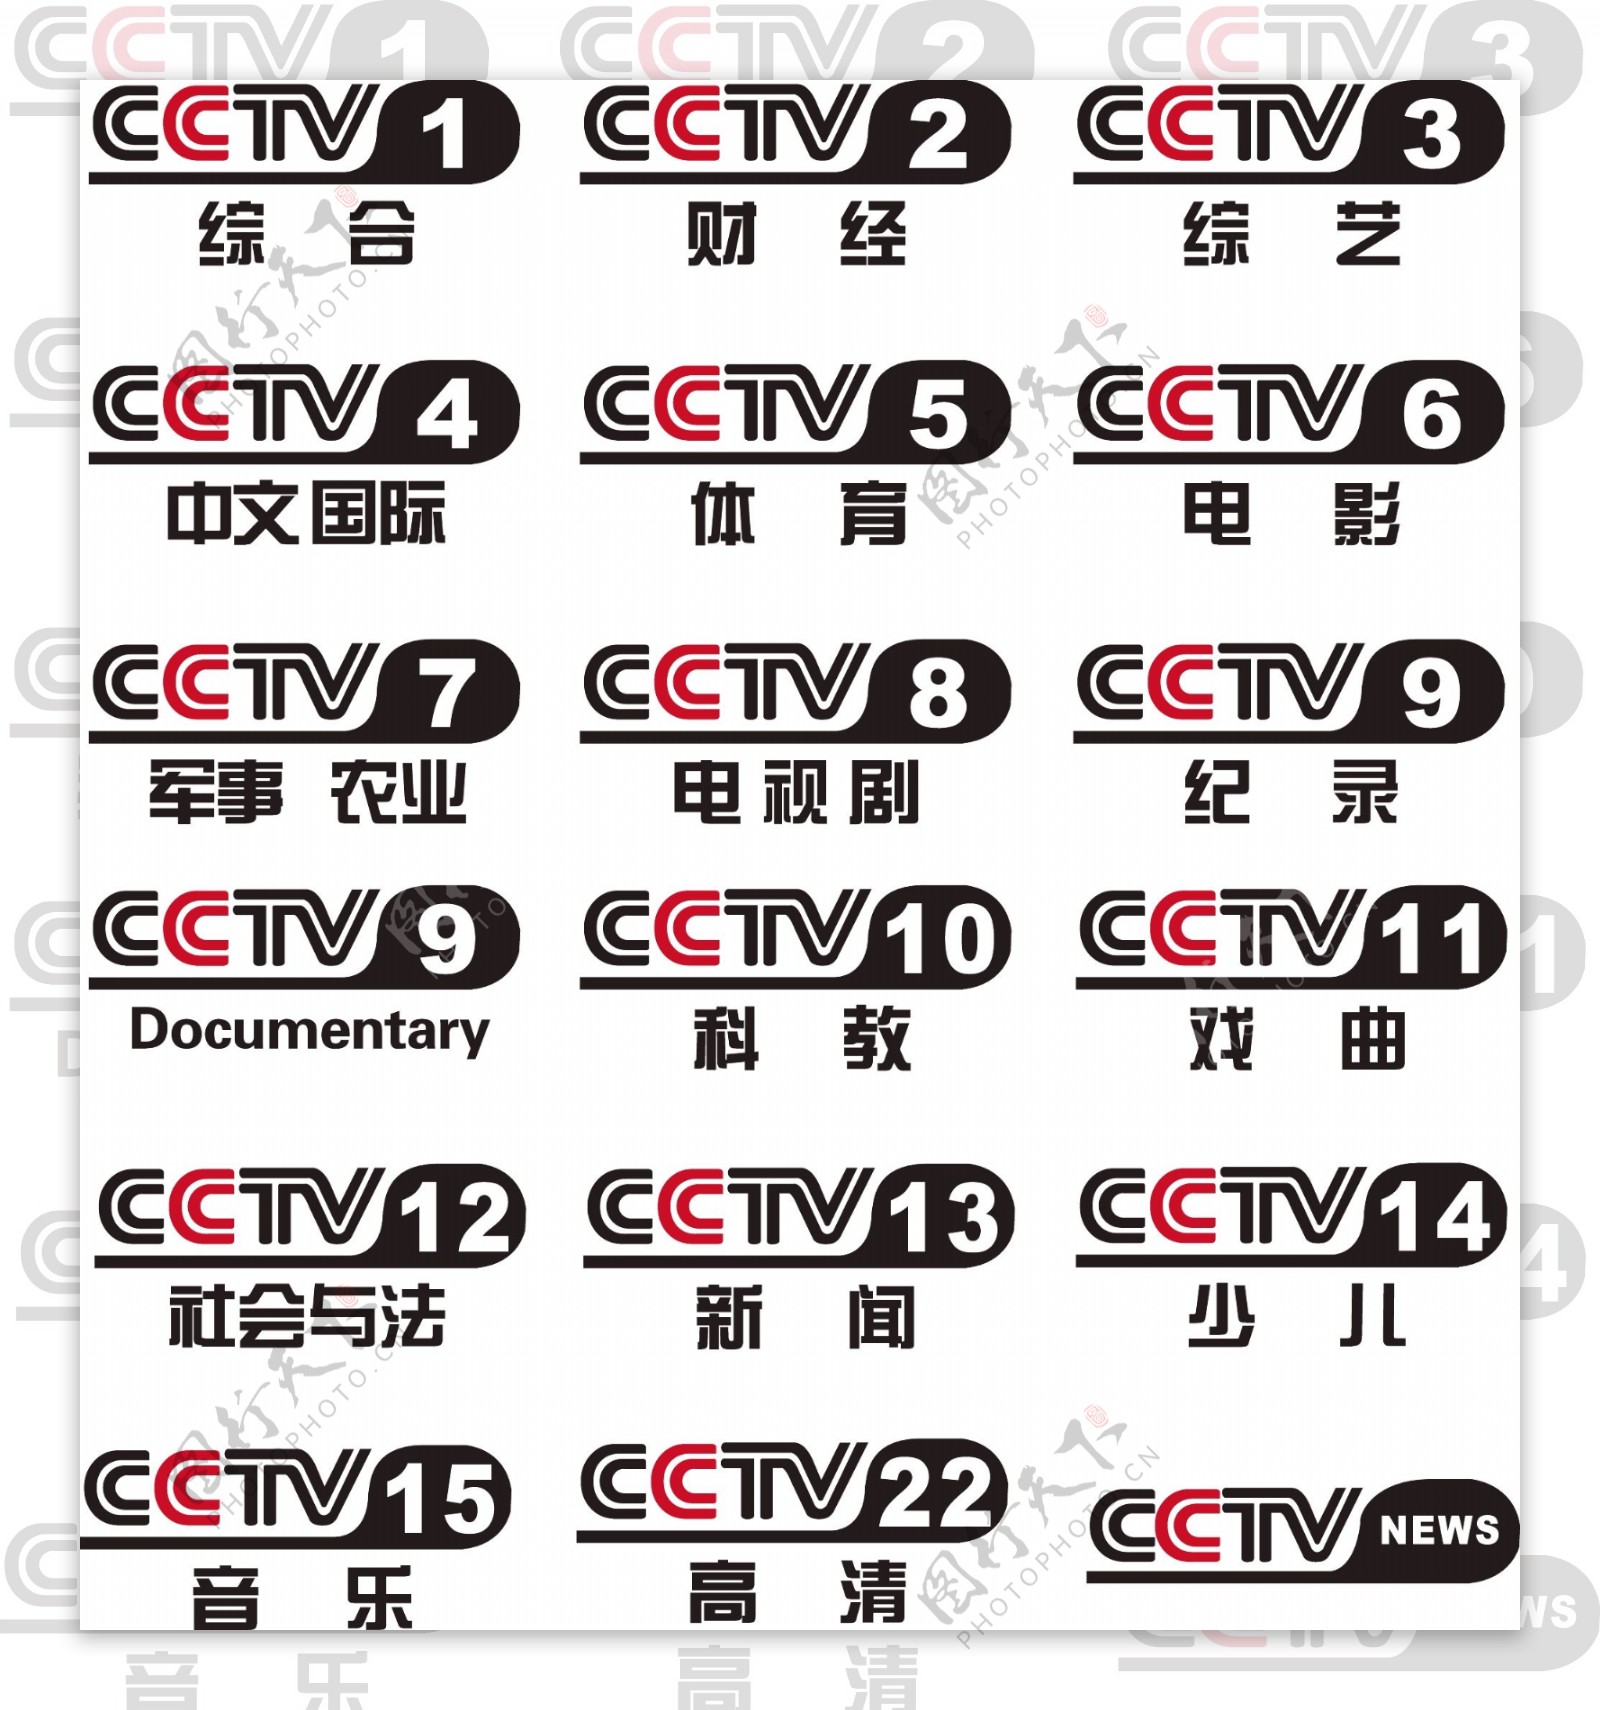 CCTV央视台标LOGO图片